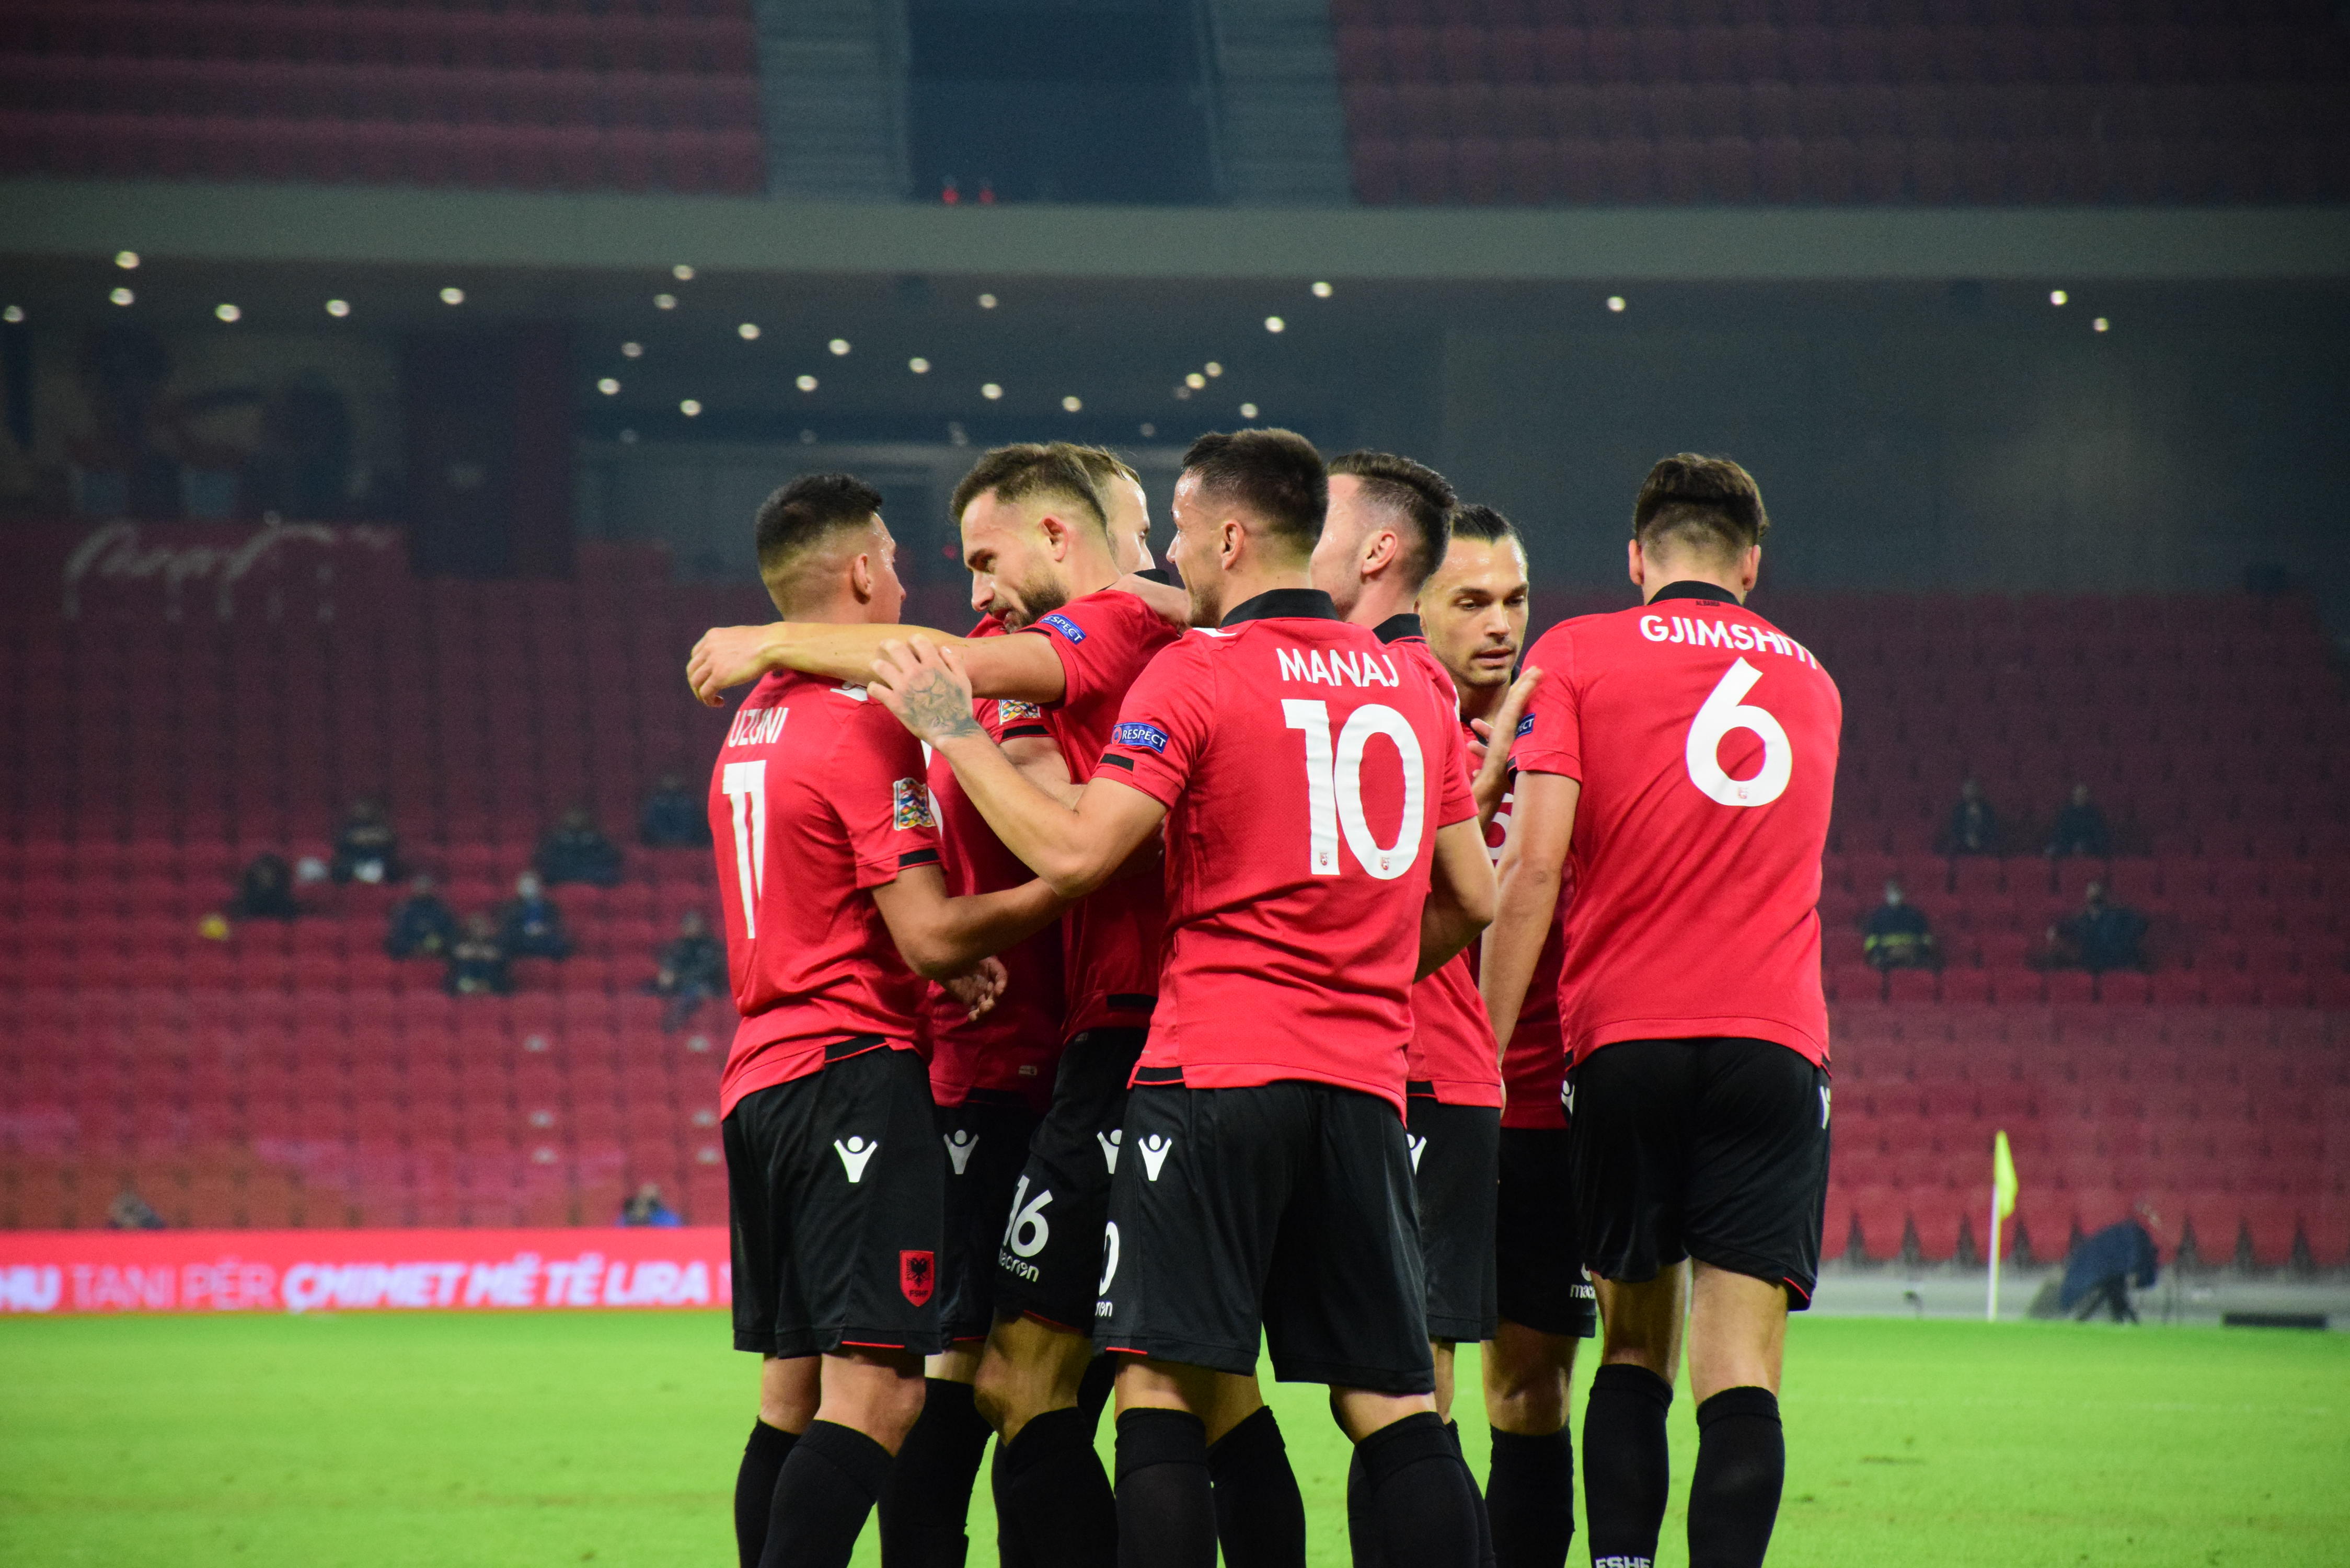 Eliminacje MŚ: Albania - sylwetka grupowego rywala Polaków. Są groźni! -  Piłka nożna